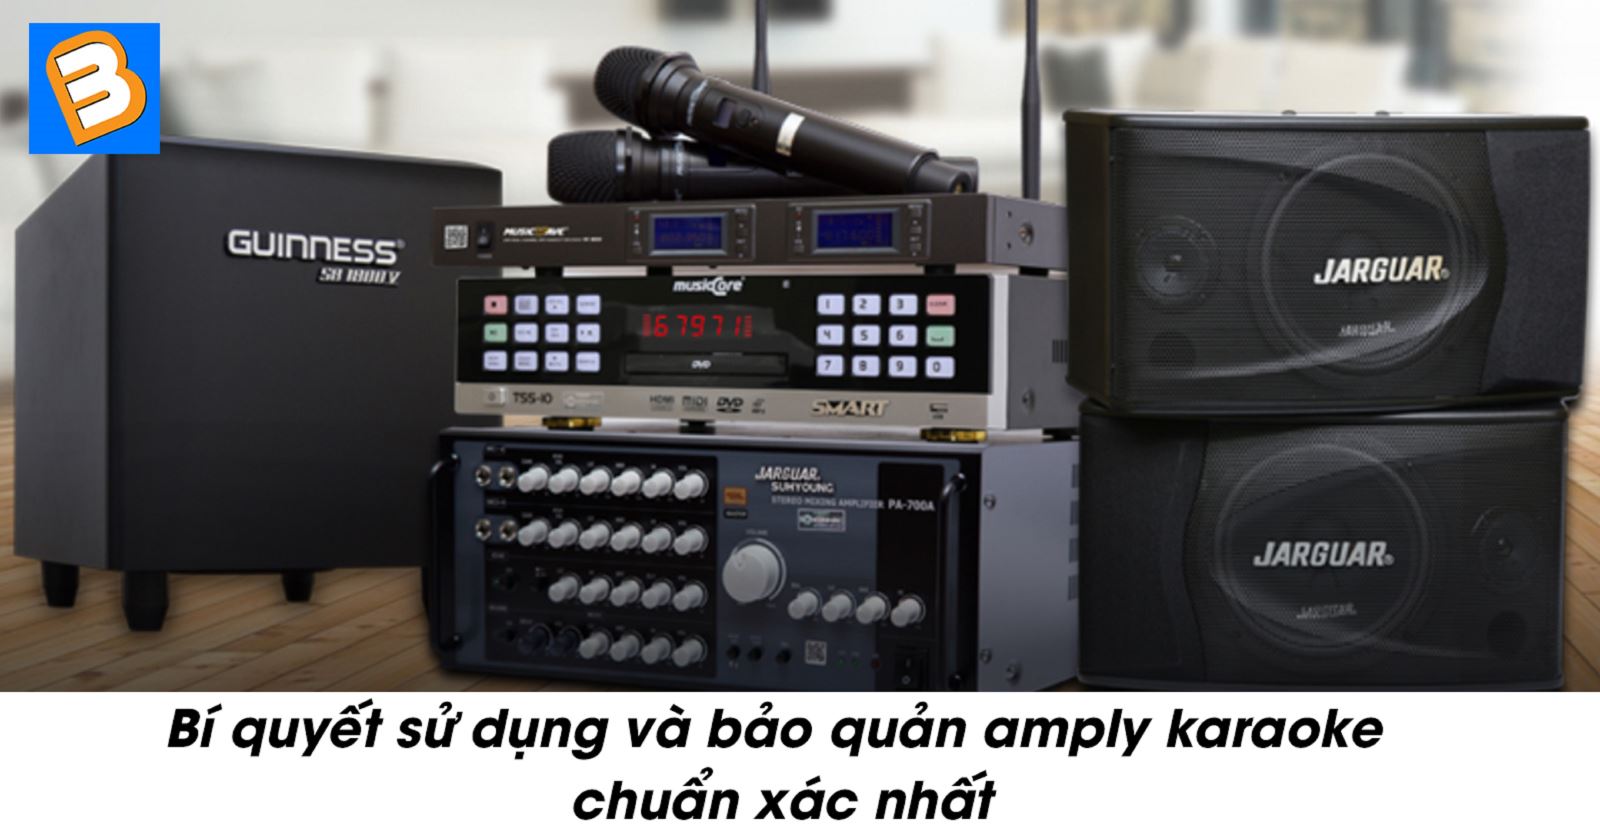 Bí quyết sử dụng và bảo quản amply karaoke chuẩn xác nhất